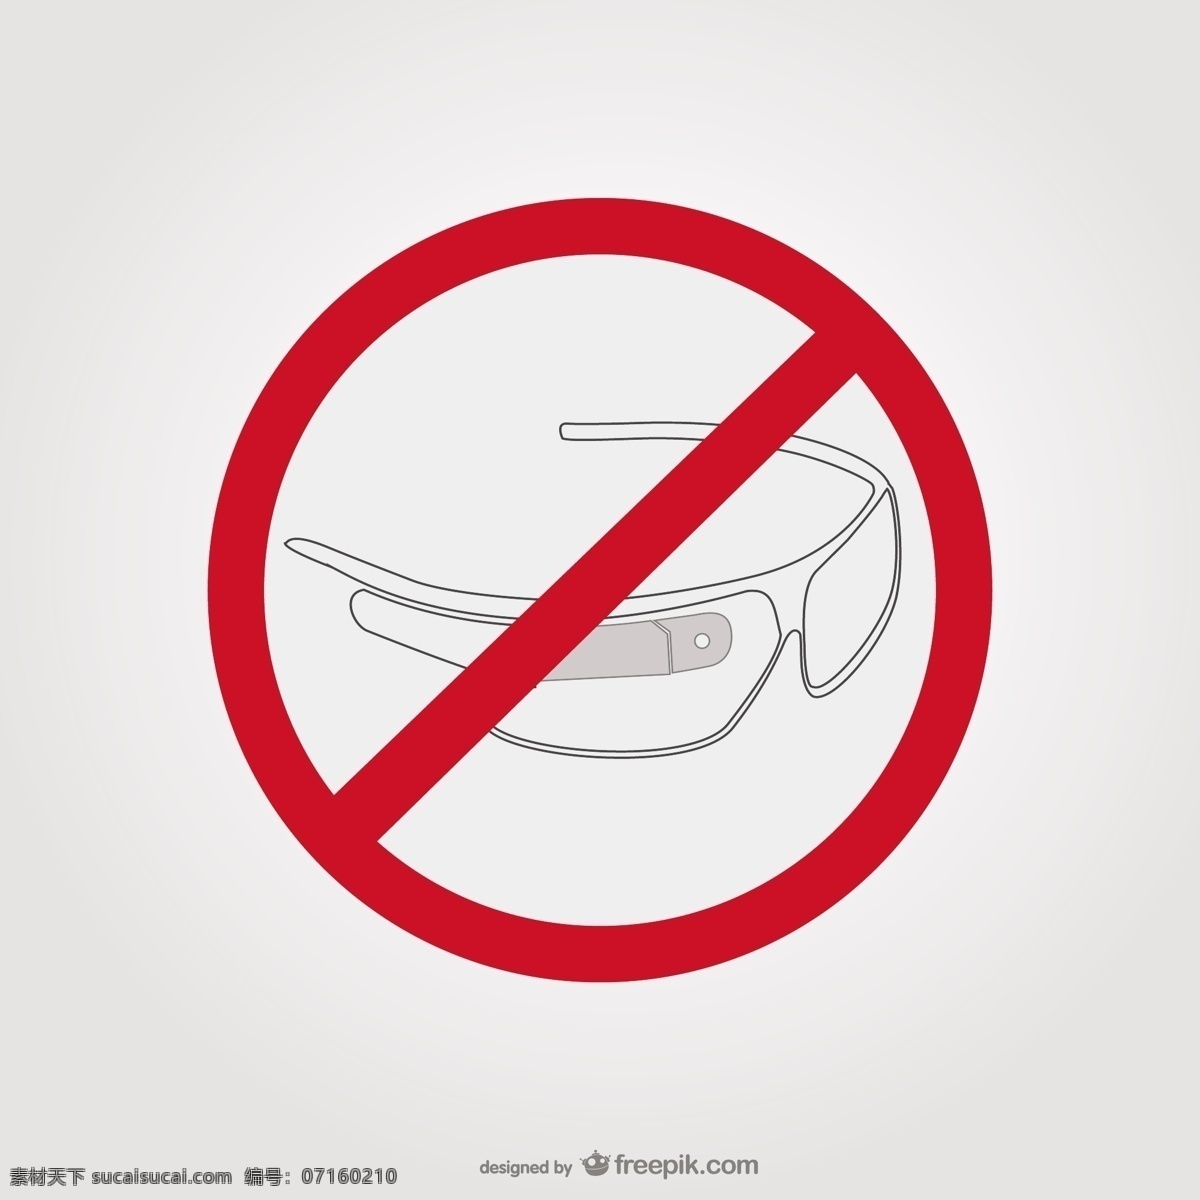 谷 歌 眼镜 停车 标志 图标设计 图标 模板 平 图形 布局 玻璃 图形设计 平面设计 元素 象形文字 装饰 未来 插图 设计元素 停止 白色